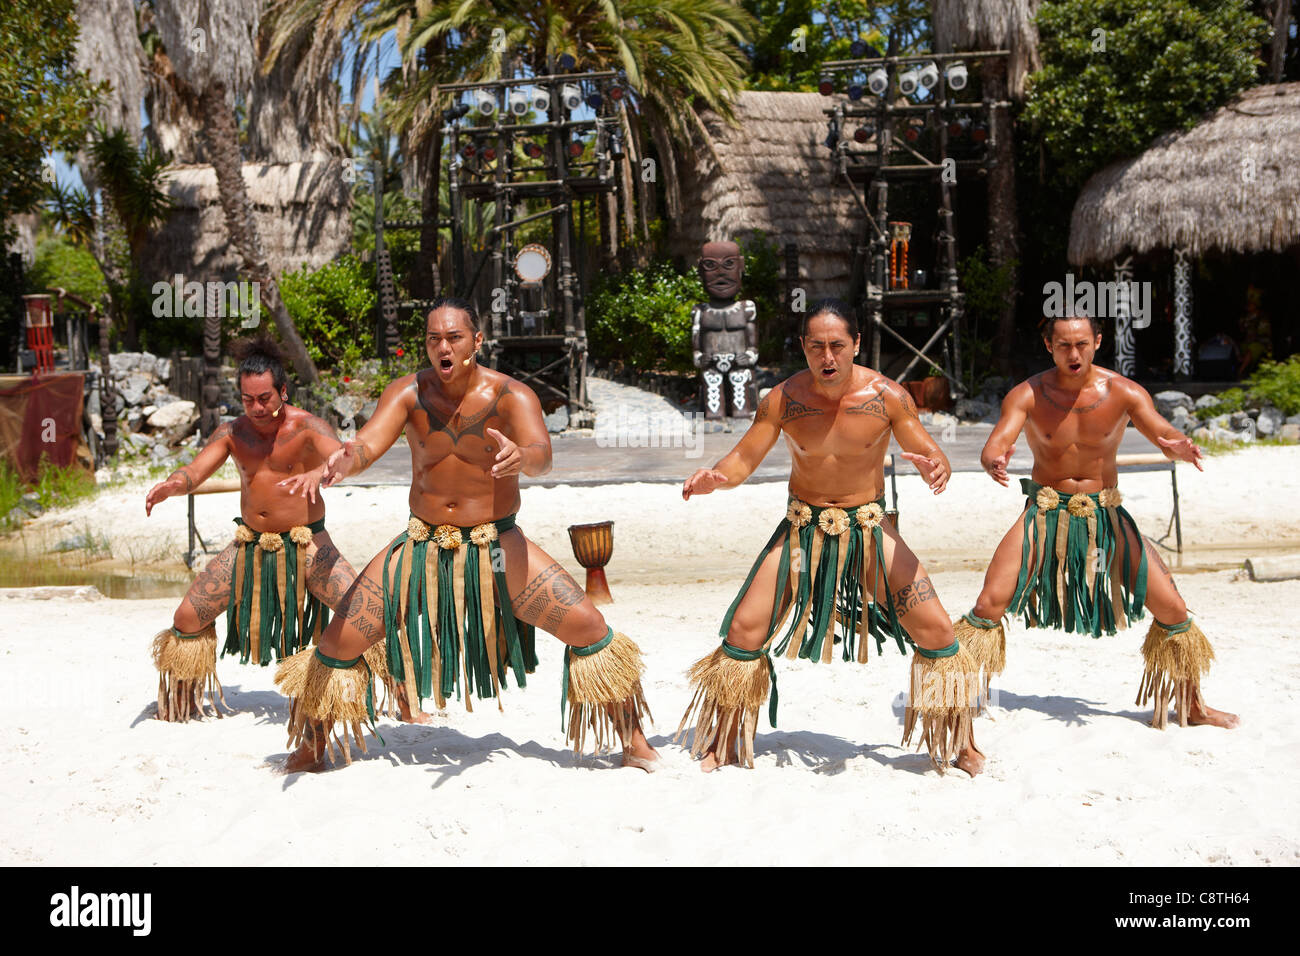 Danseurs polynésiens en costumes traditionnels dans le parc d'attractions Port Aventura. Salou, Catalogne, Espagne. Banque D'Images